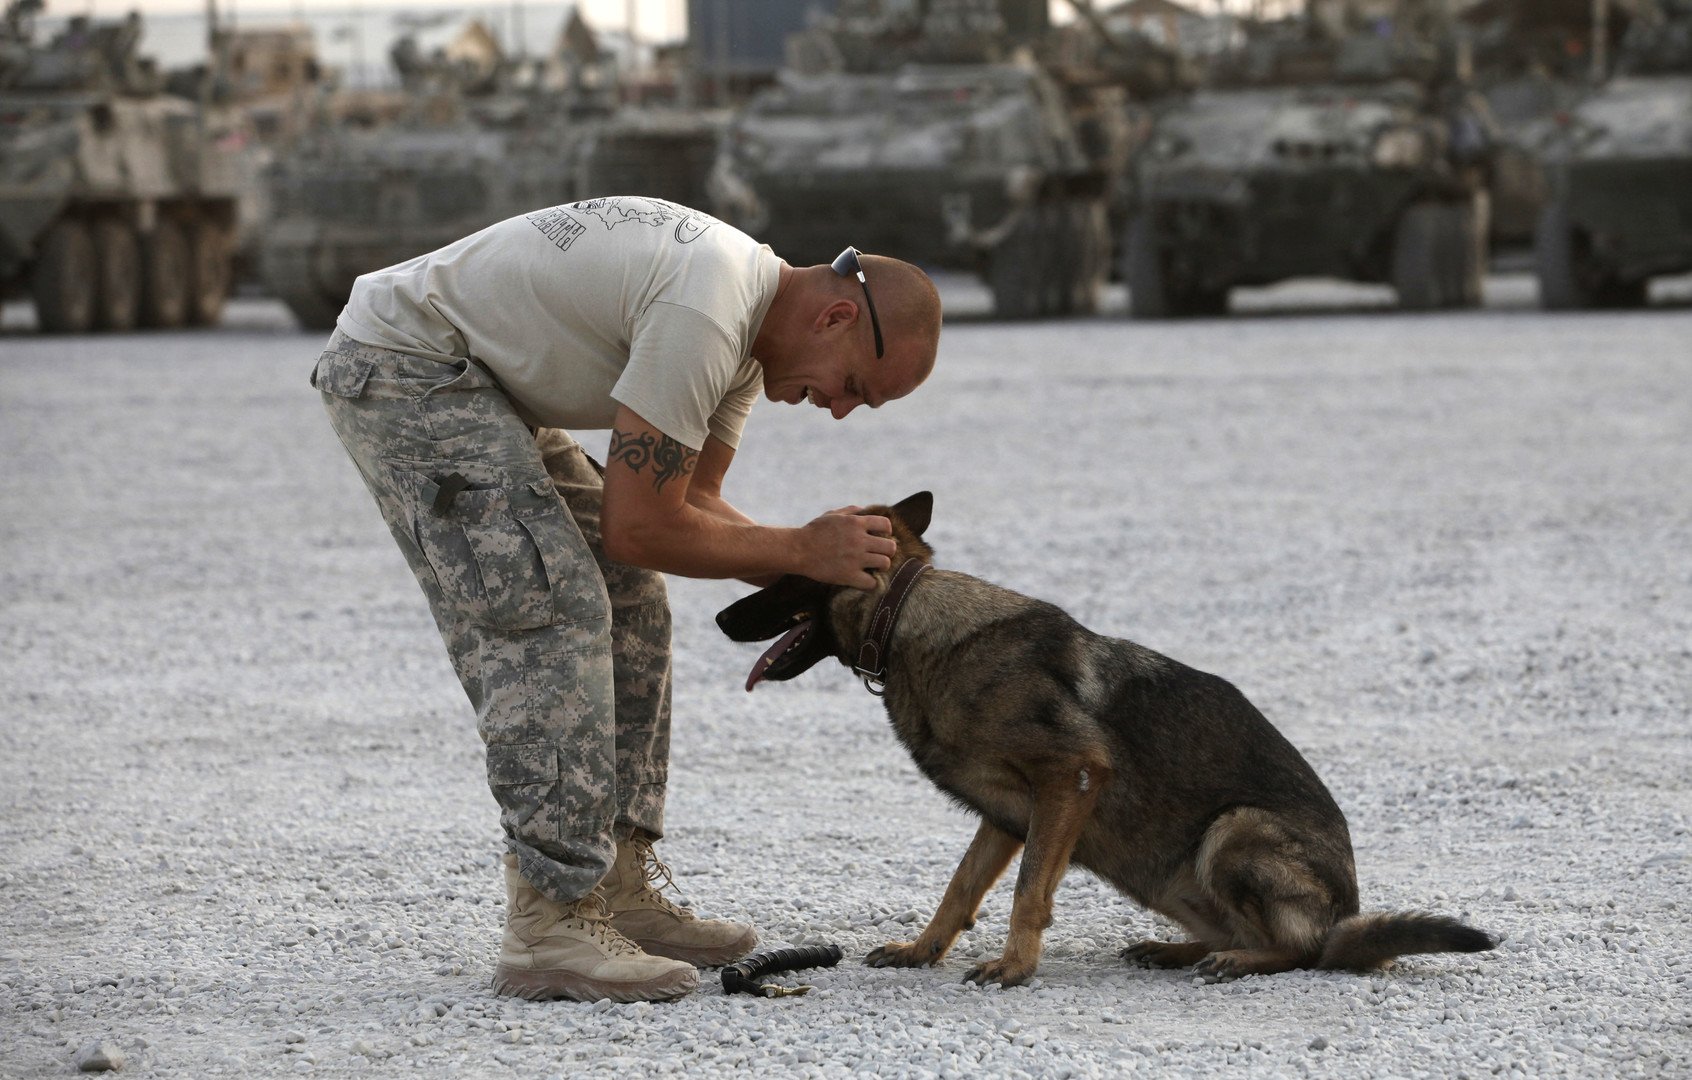 جندي كرواتي يداعب أحد الكلاب المدربة لأغراض عسكرية، قندهار، أفغانستان، 26 يونيو 2011